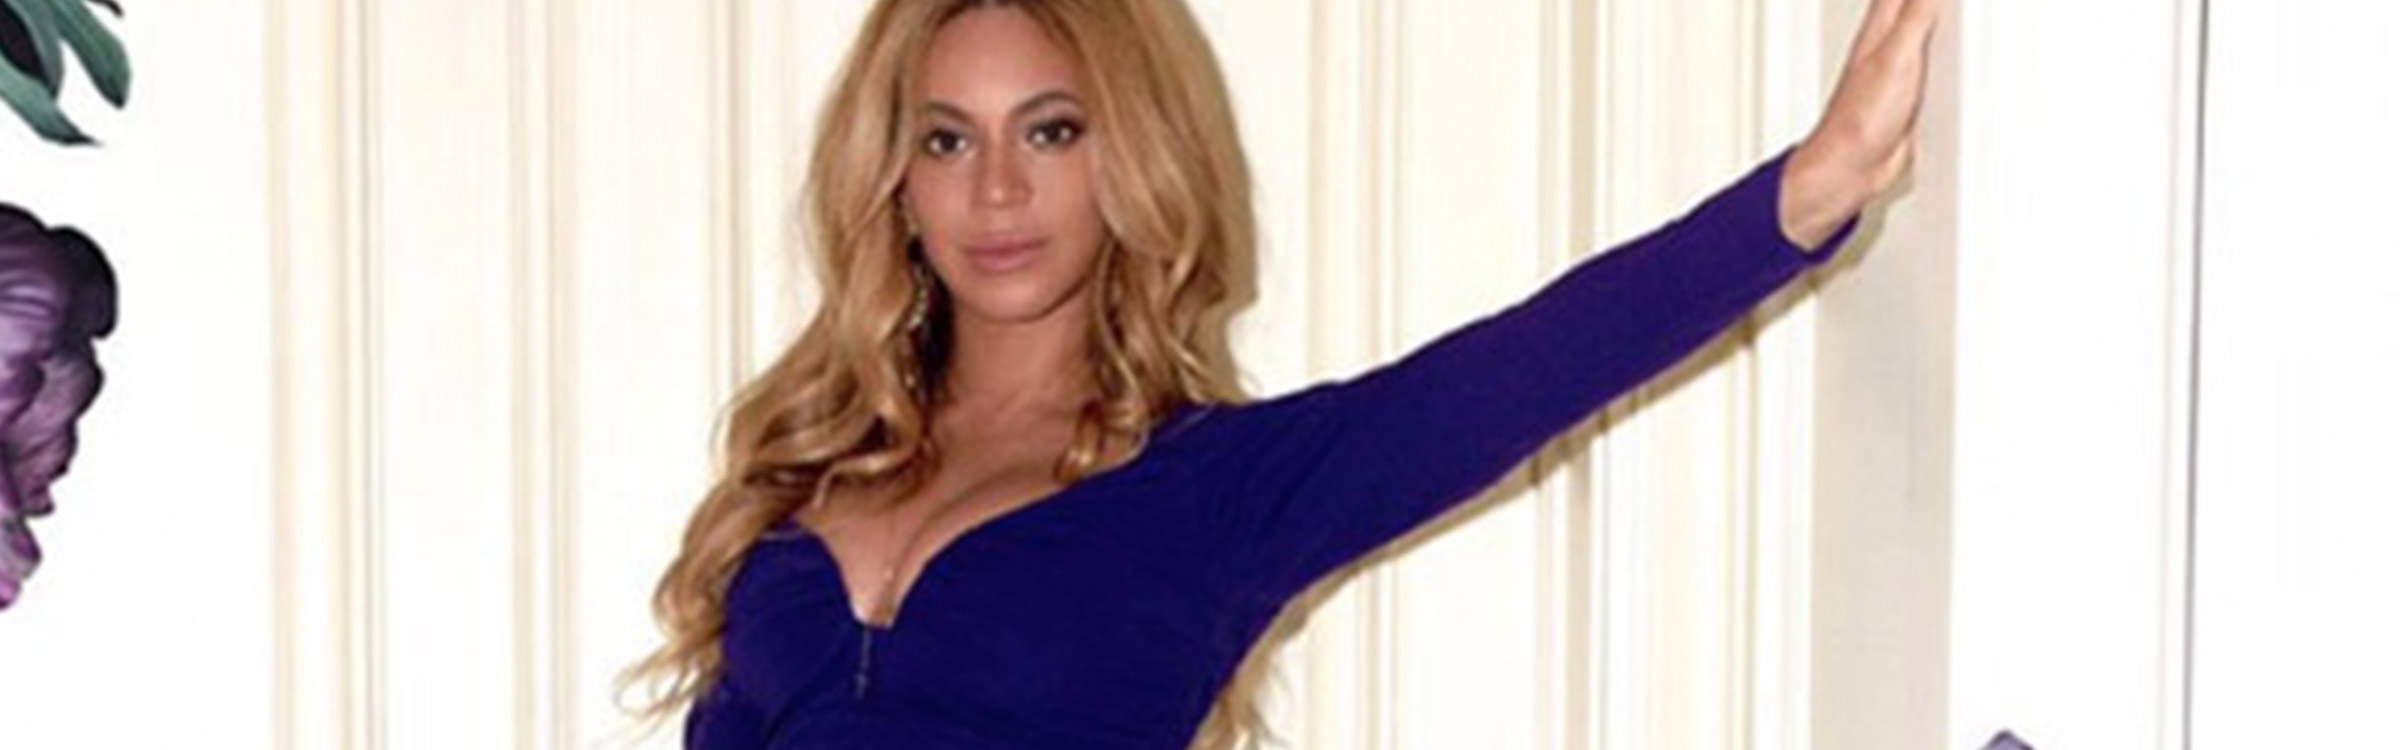 Beyonce twinnies header